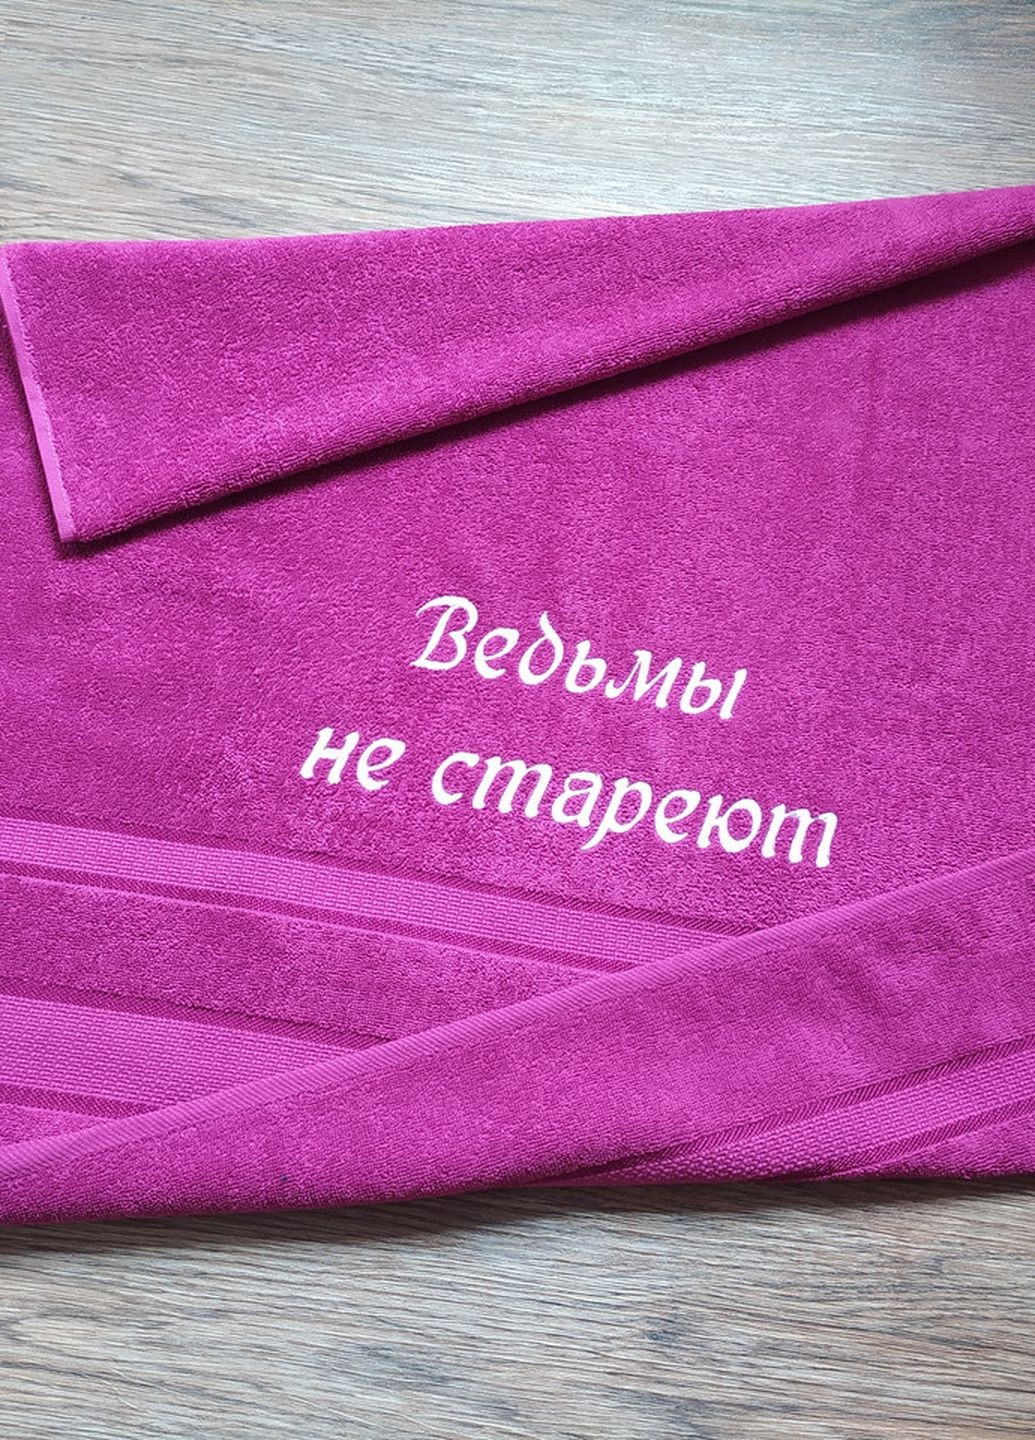 No Brand полотенце с вышивкой махровое банное 70*140 фуксия подруге 00123 однотонный фуксия производство - Украина